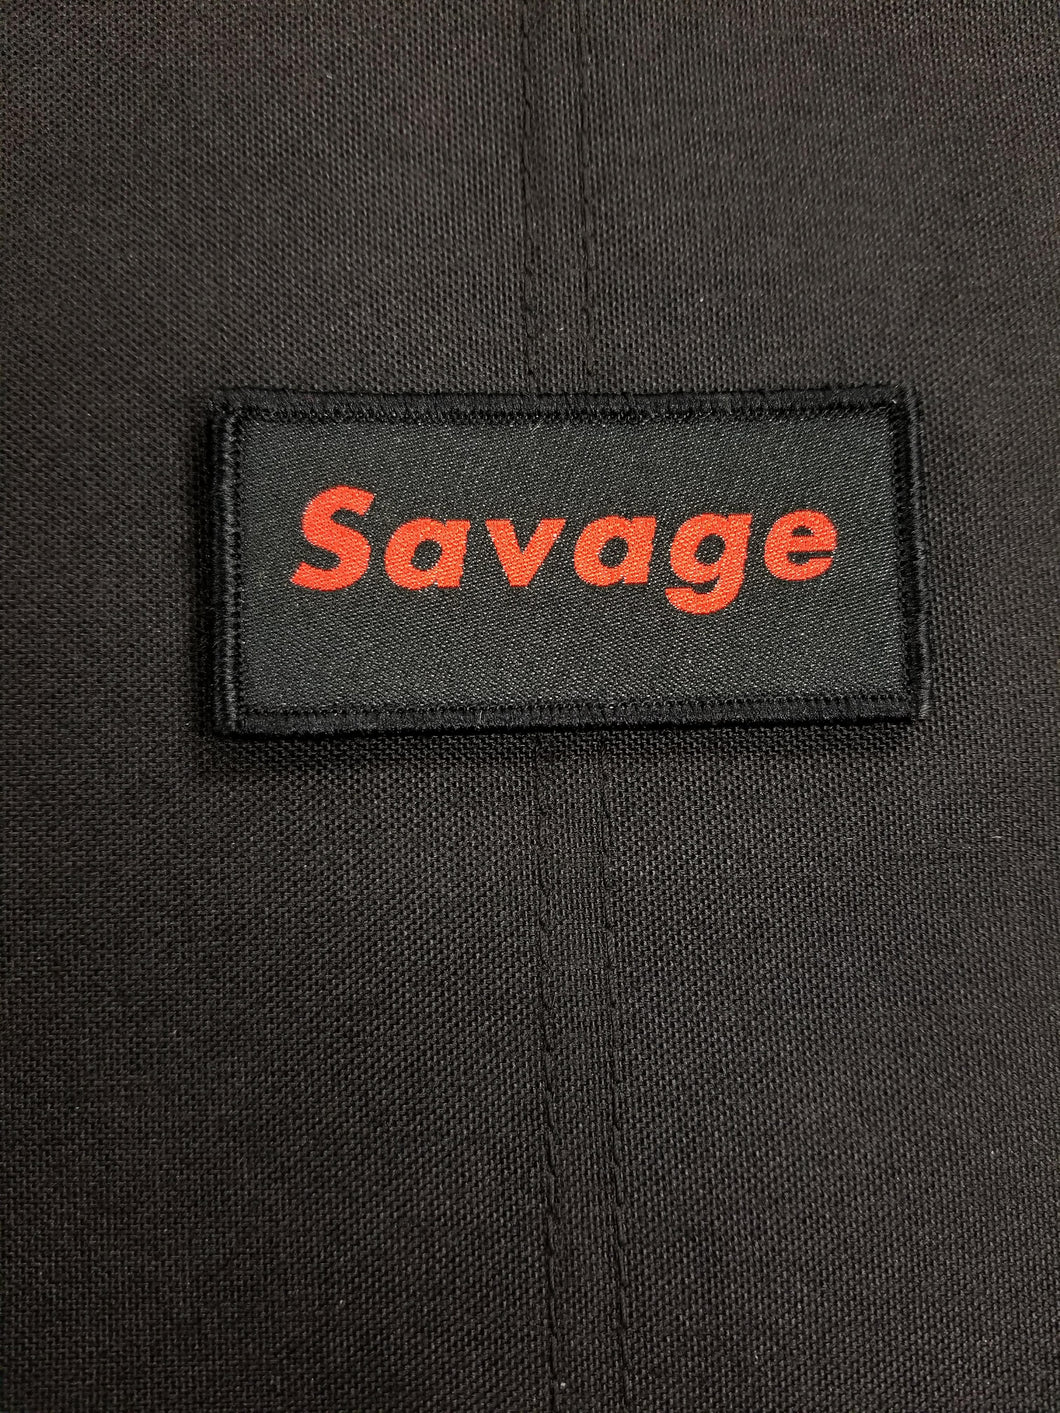 Savage Black Patch